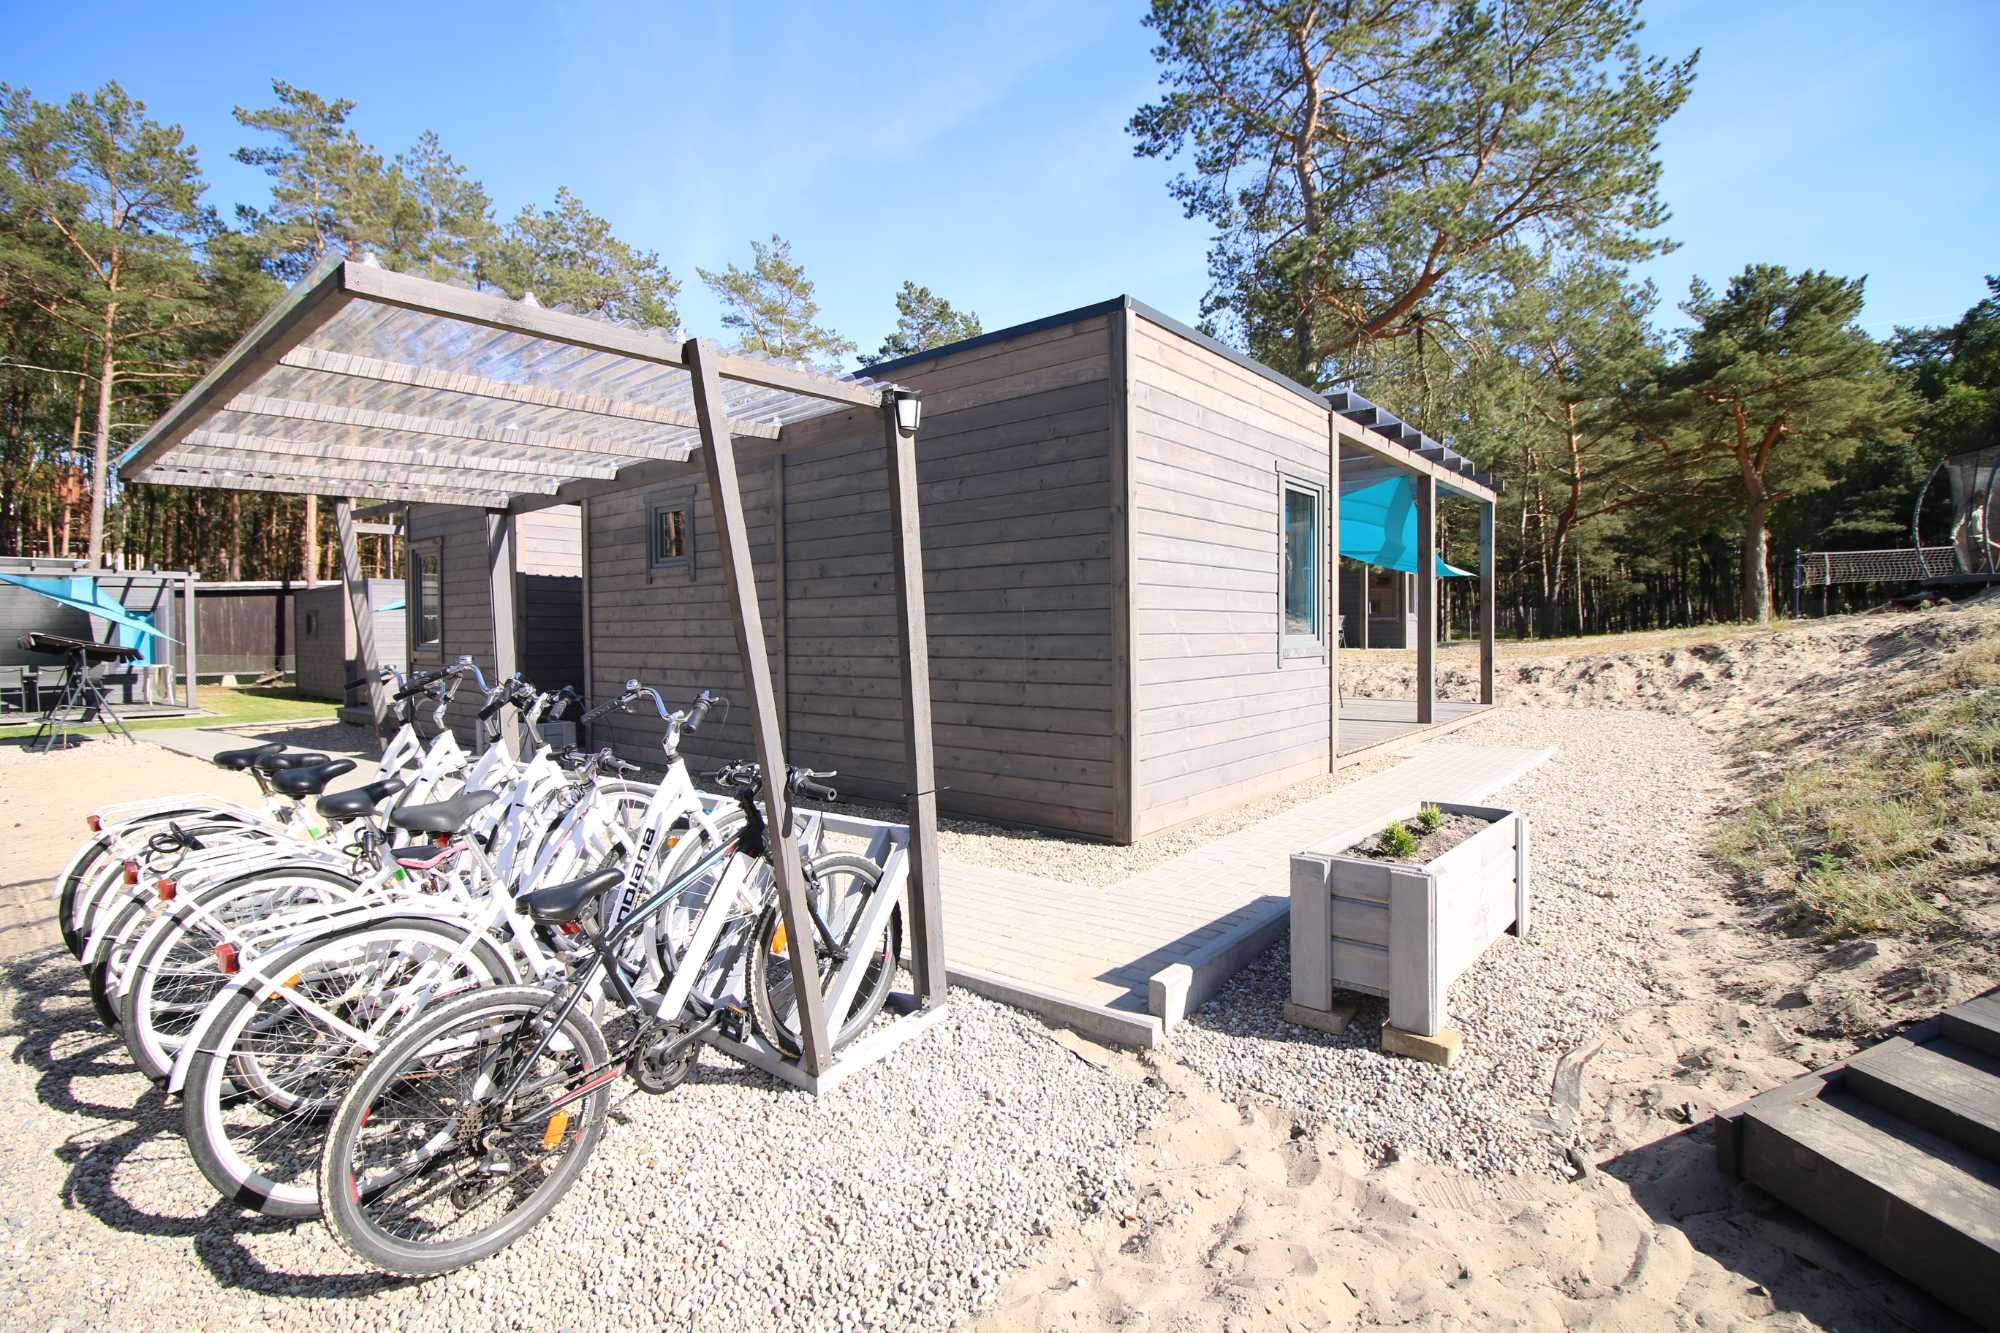 Baltic-Resort Pobierowo - domki wczasowe, 400 metrów od plaży | BASEN